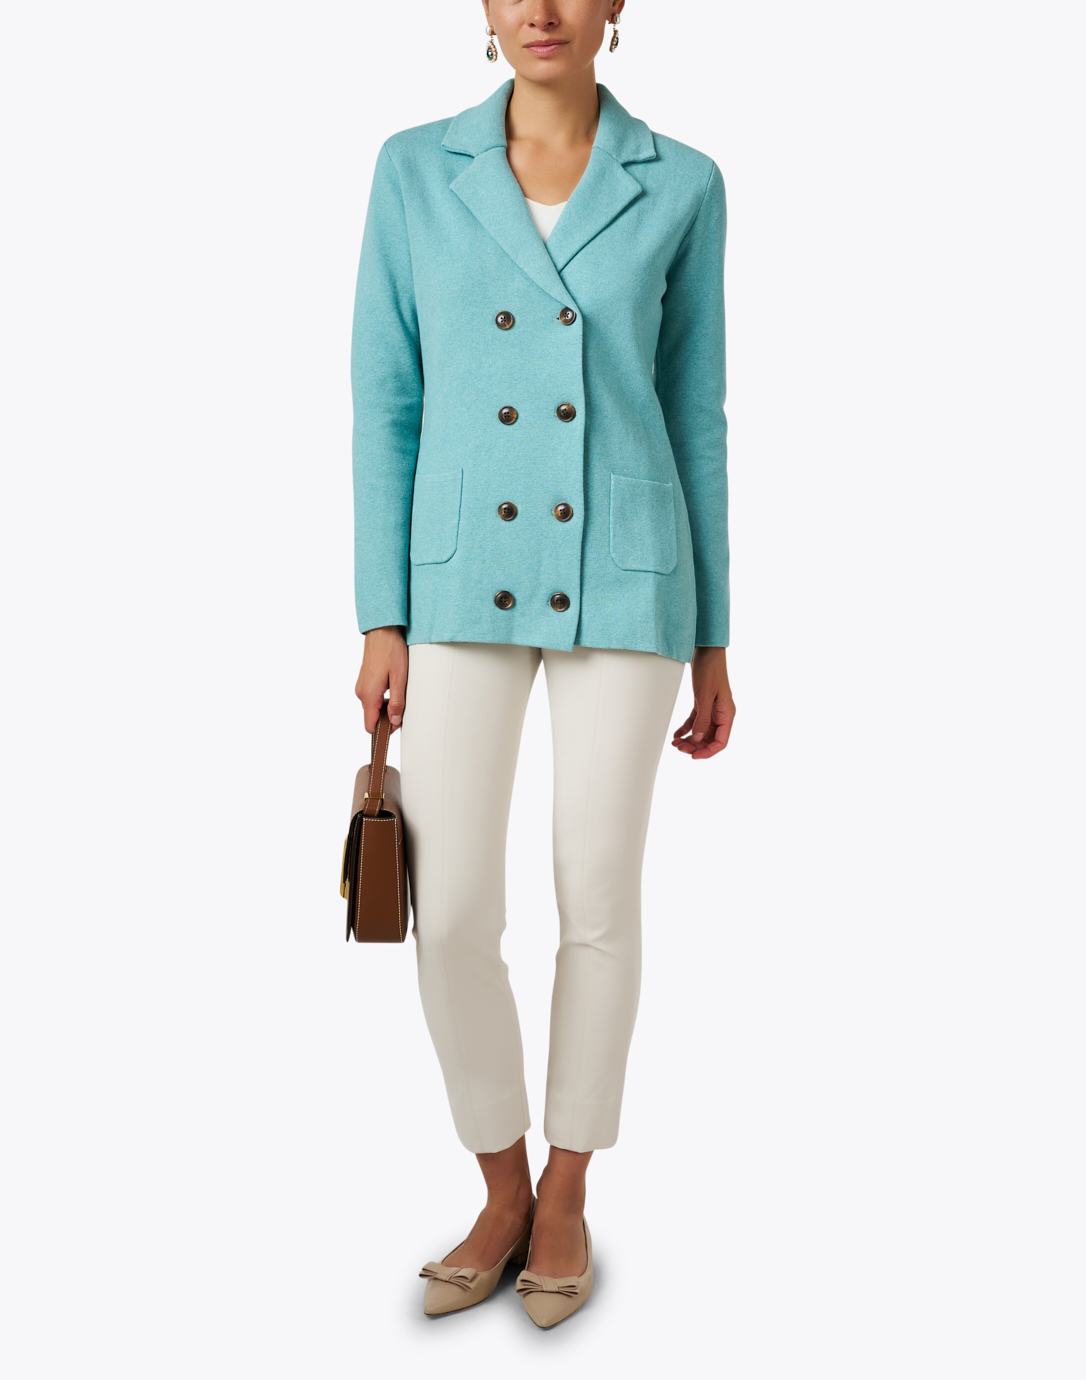 Milan Teal Cotton | Burgess Blue Cashmere Coat